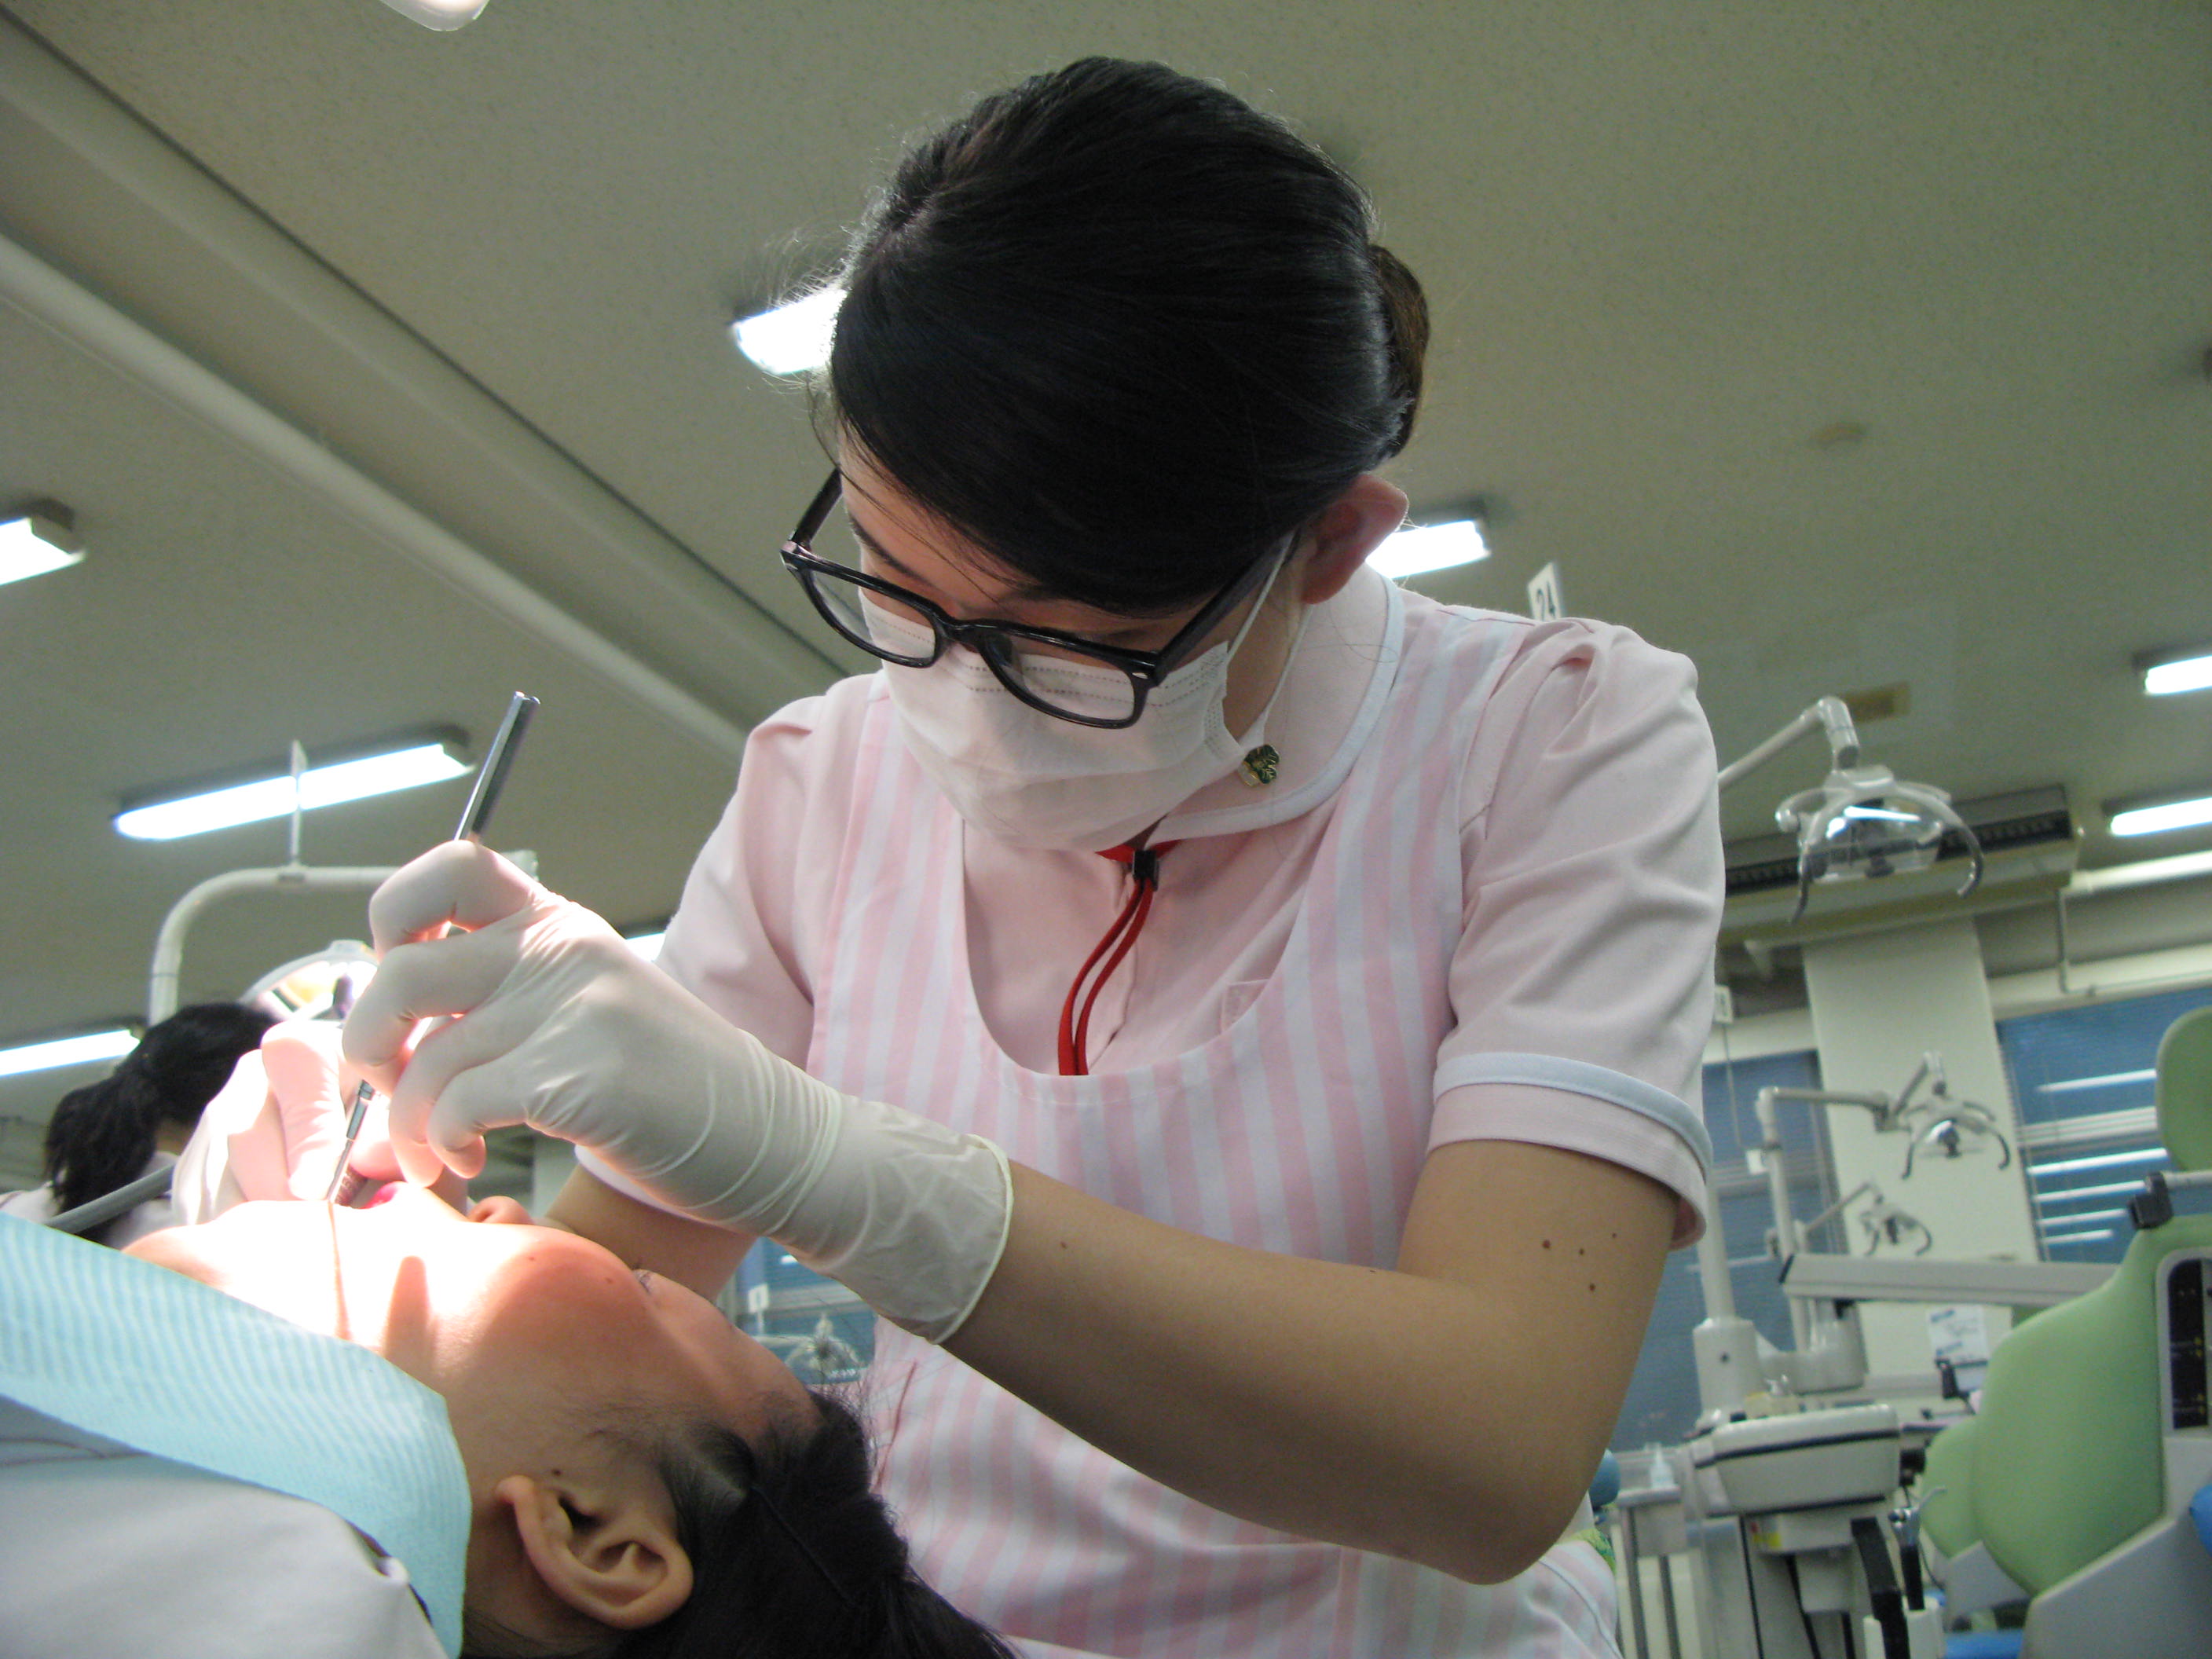 相互実習で歯科衛生士役、患者さん役を行い、しっかりと技術を身に付けます。